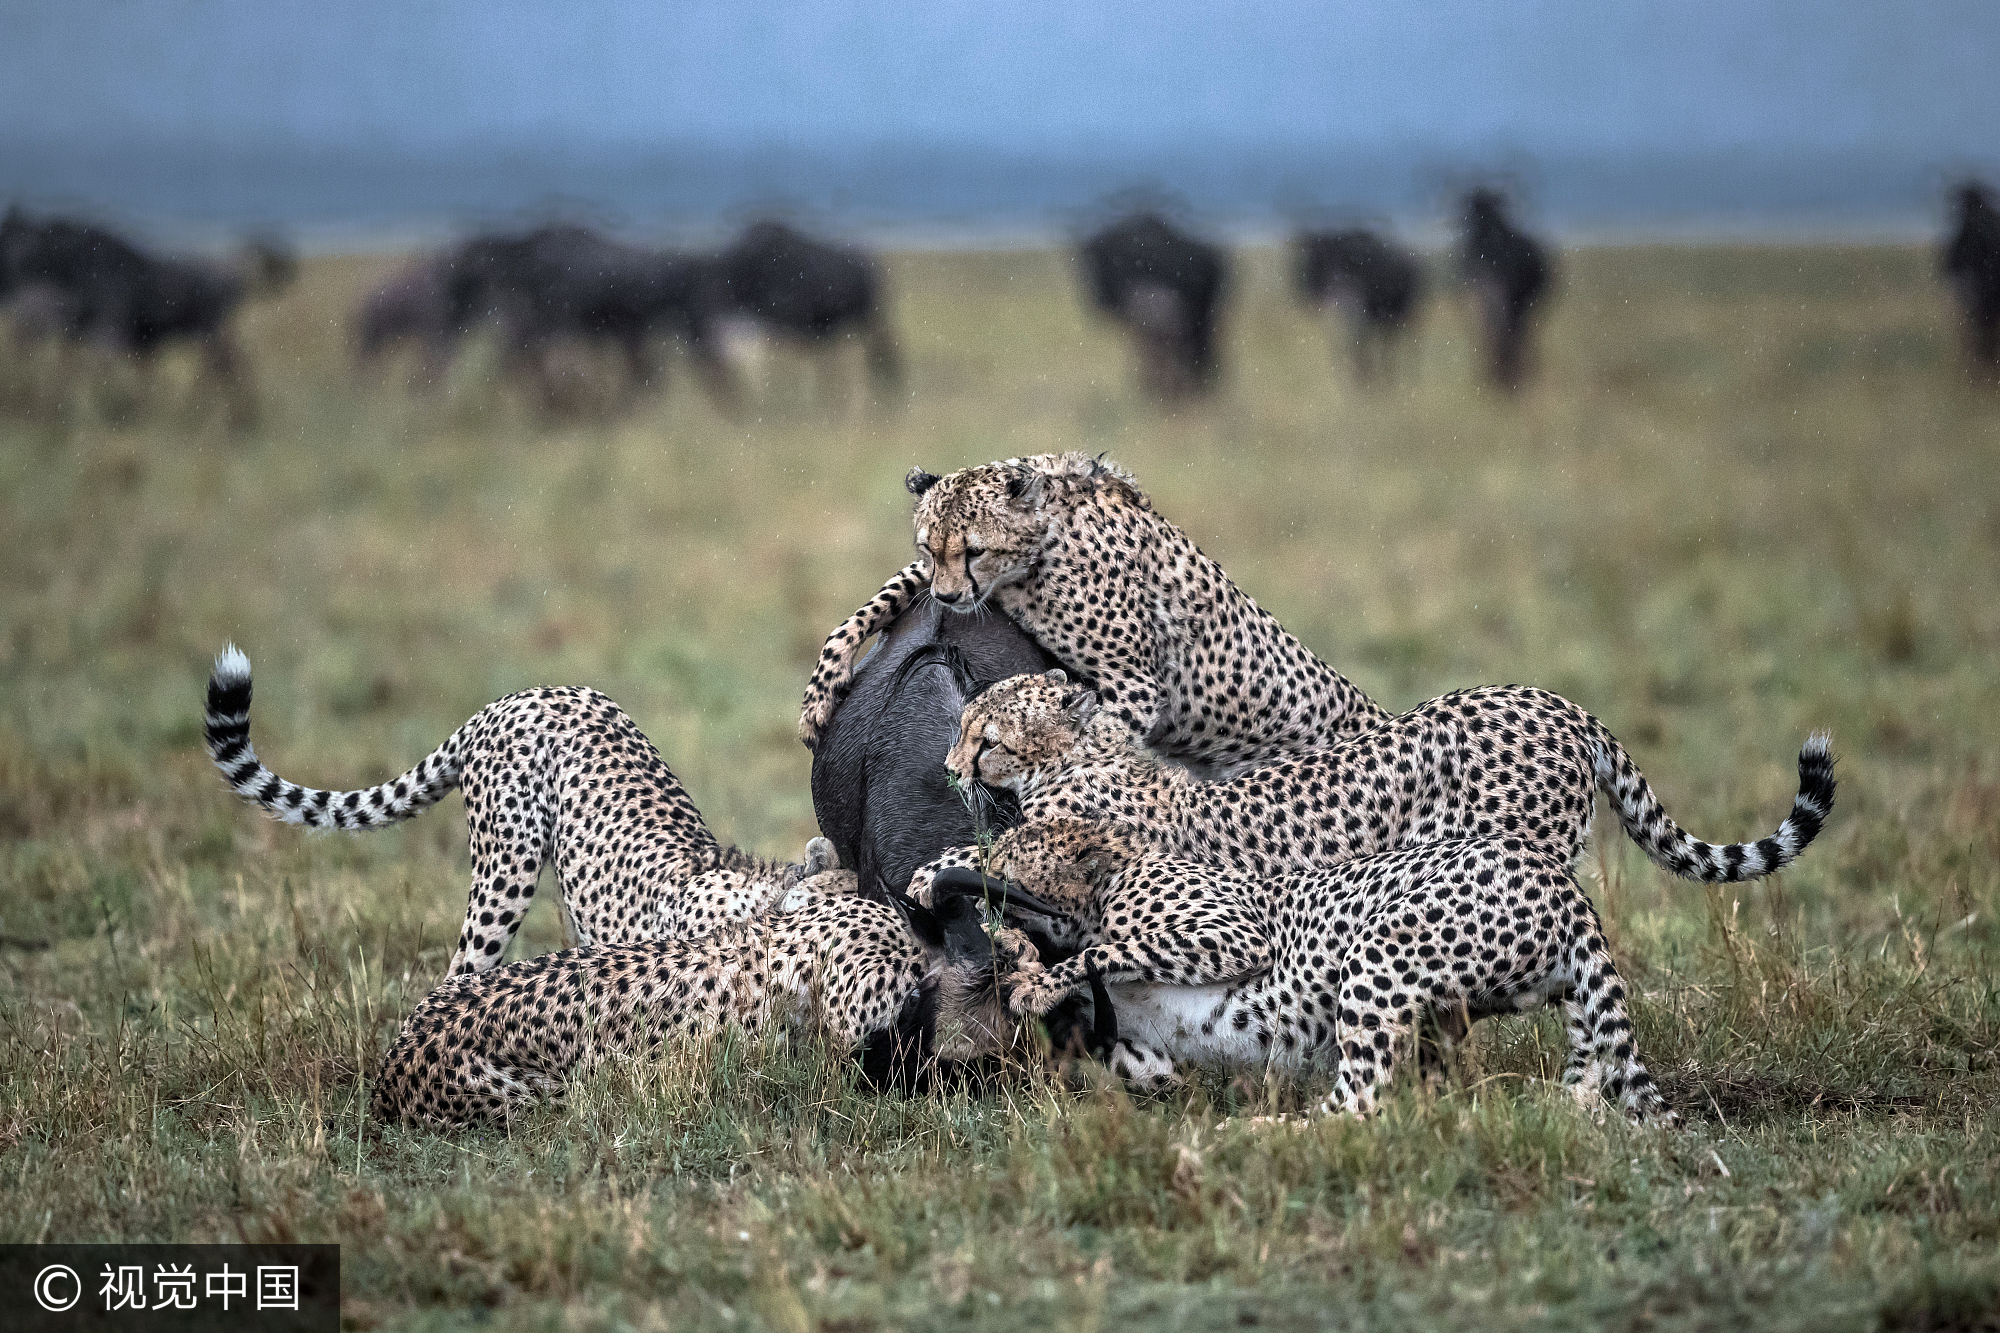 肯尼亚:5只年轻猎豹合力围捕牛羚 力量悬殊场面惨烈